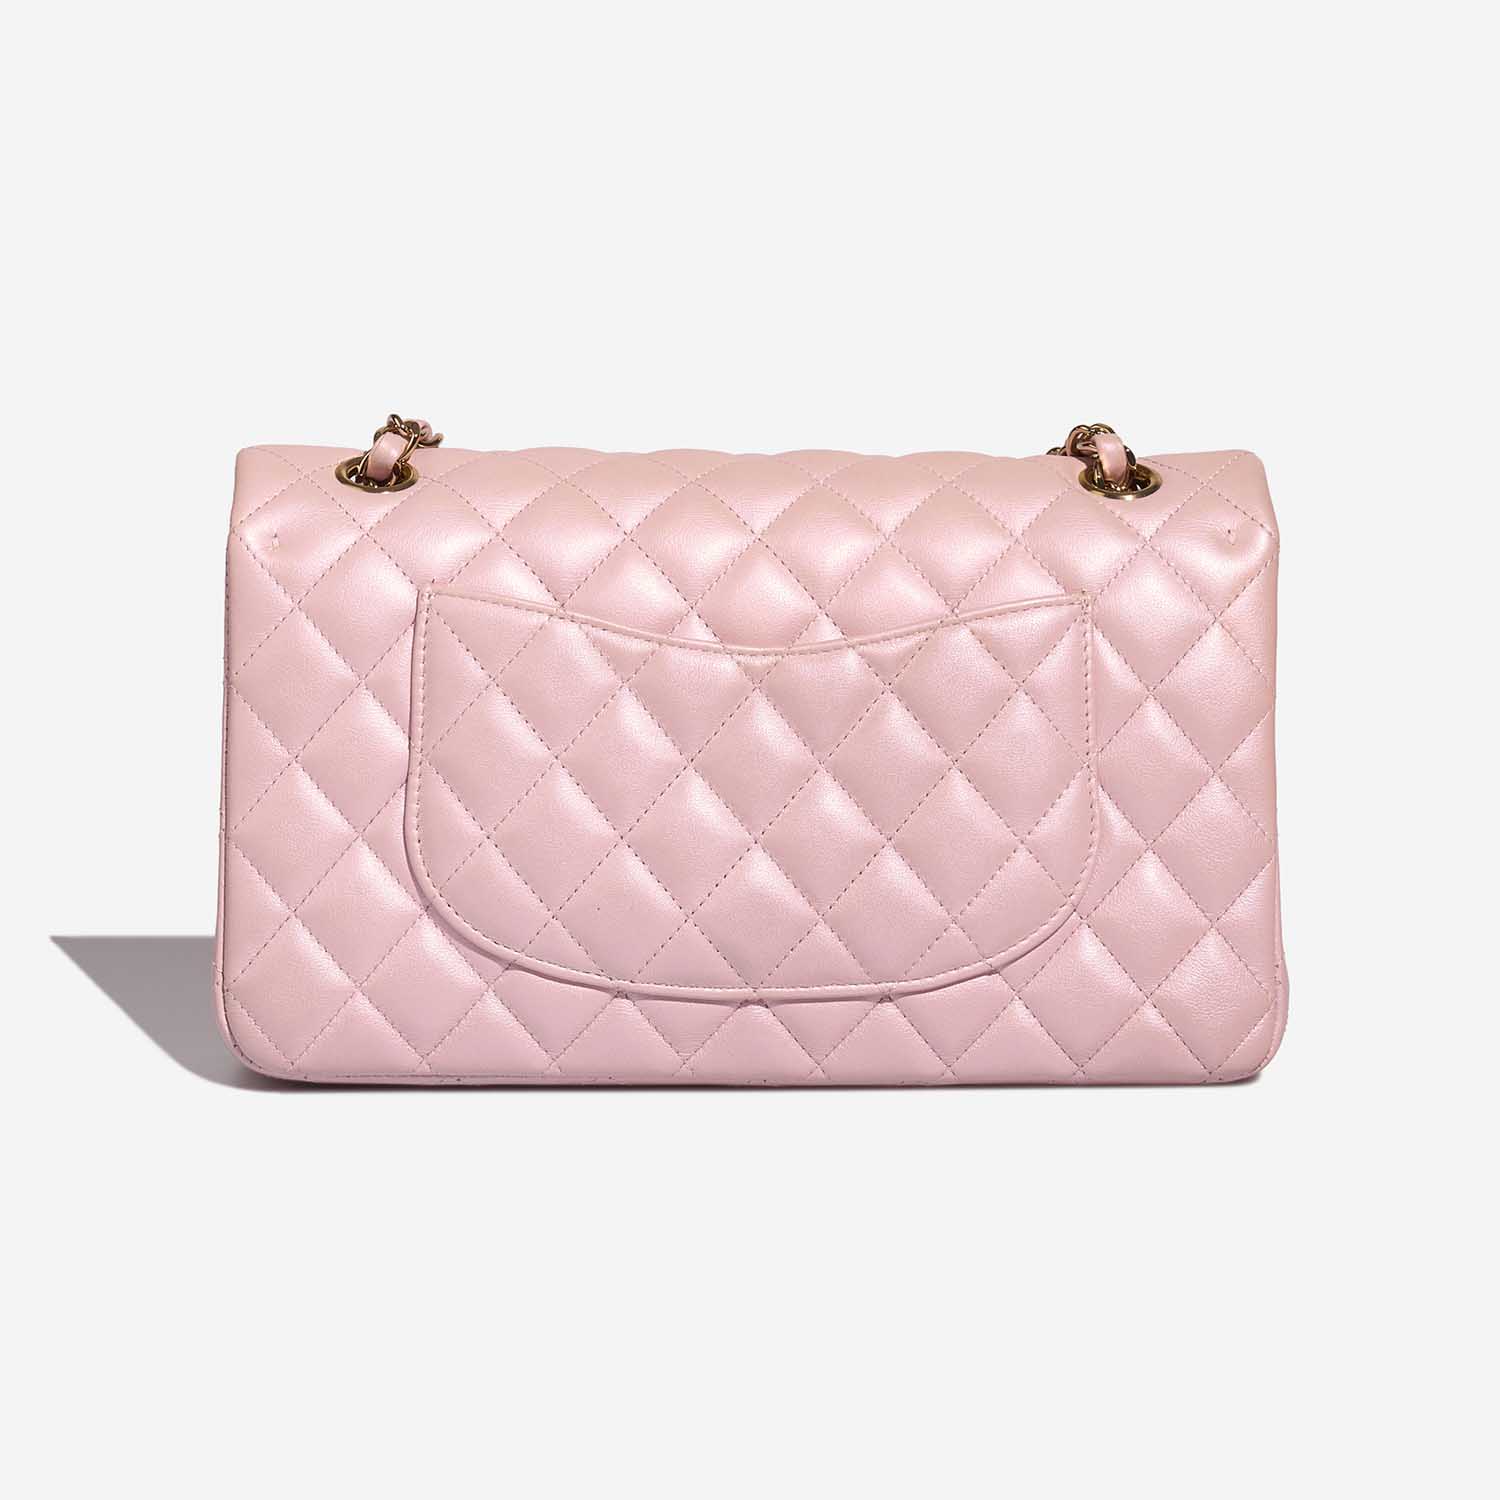 Chanel Timeless Medium LightPink Back | Verkaufen Sie Ihre Designer-Tasche auf Saclab.com